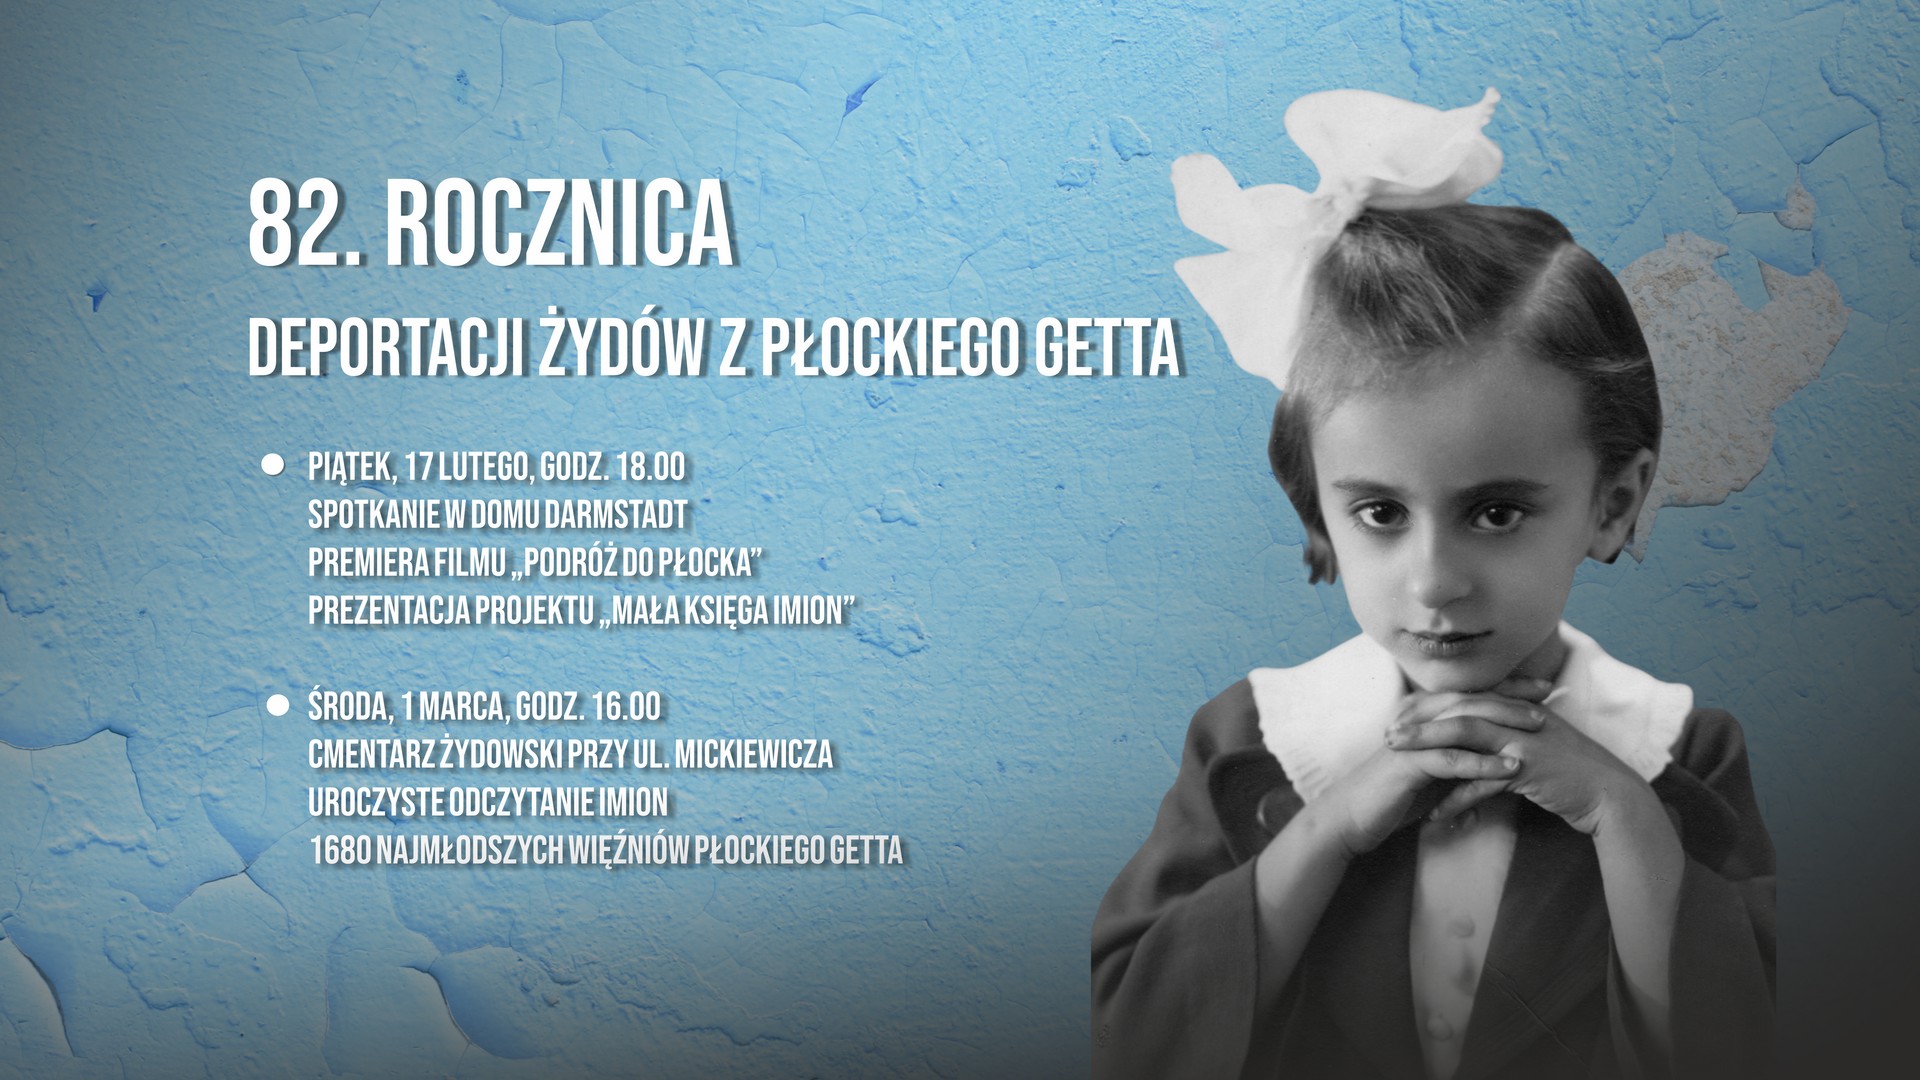 82. rocznica deportacji Żydów z płockiego getta